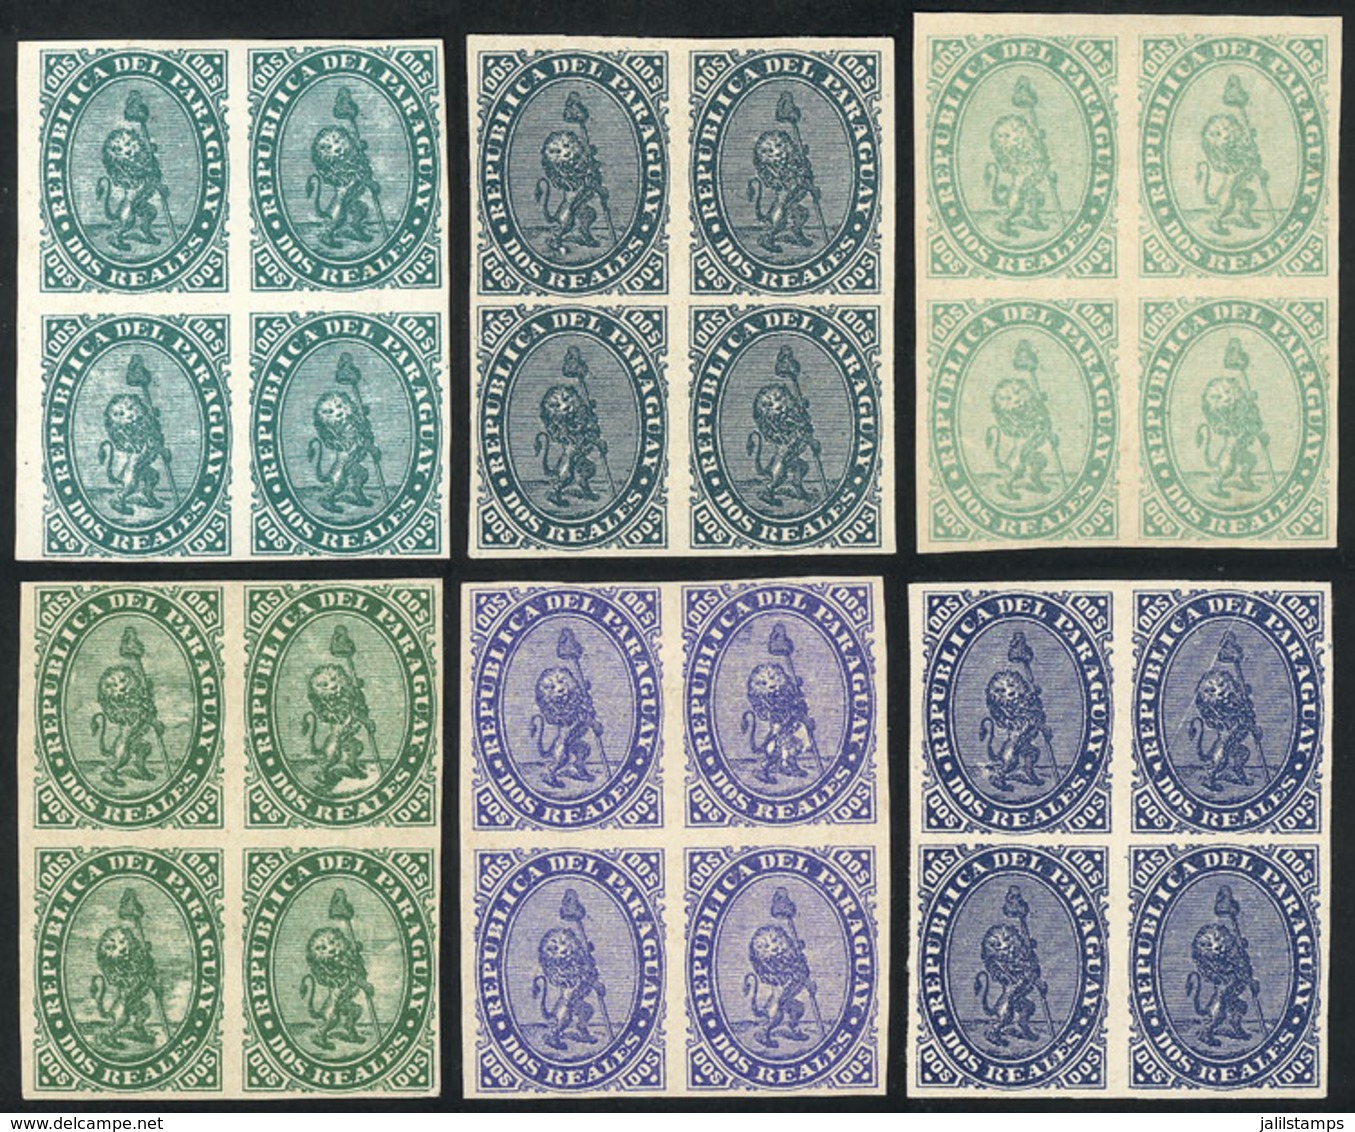 PARAGUAY: Sc.2, 1870 Lion 2R., REPRINTS: 6 Blocks Of 4 In Different Colors, Excellent Quality! - Paraguay